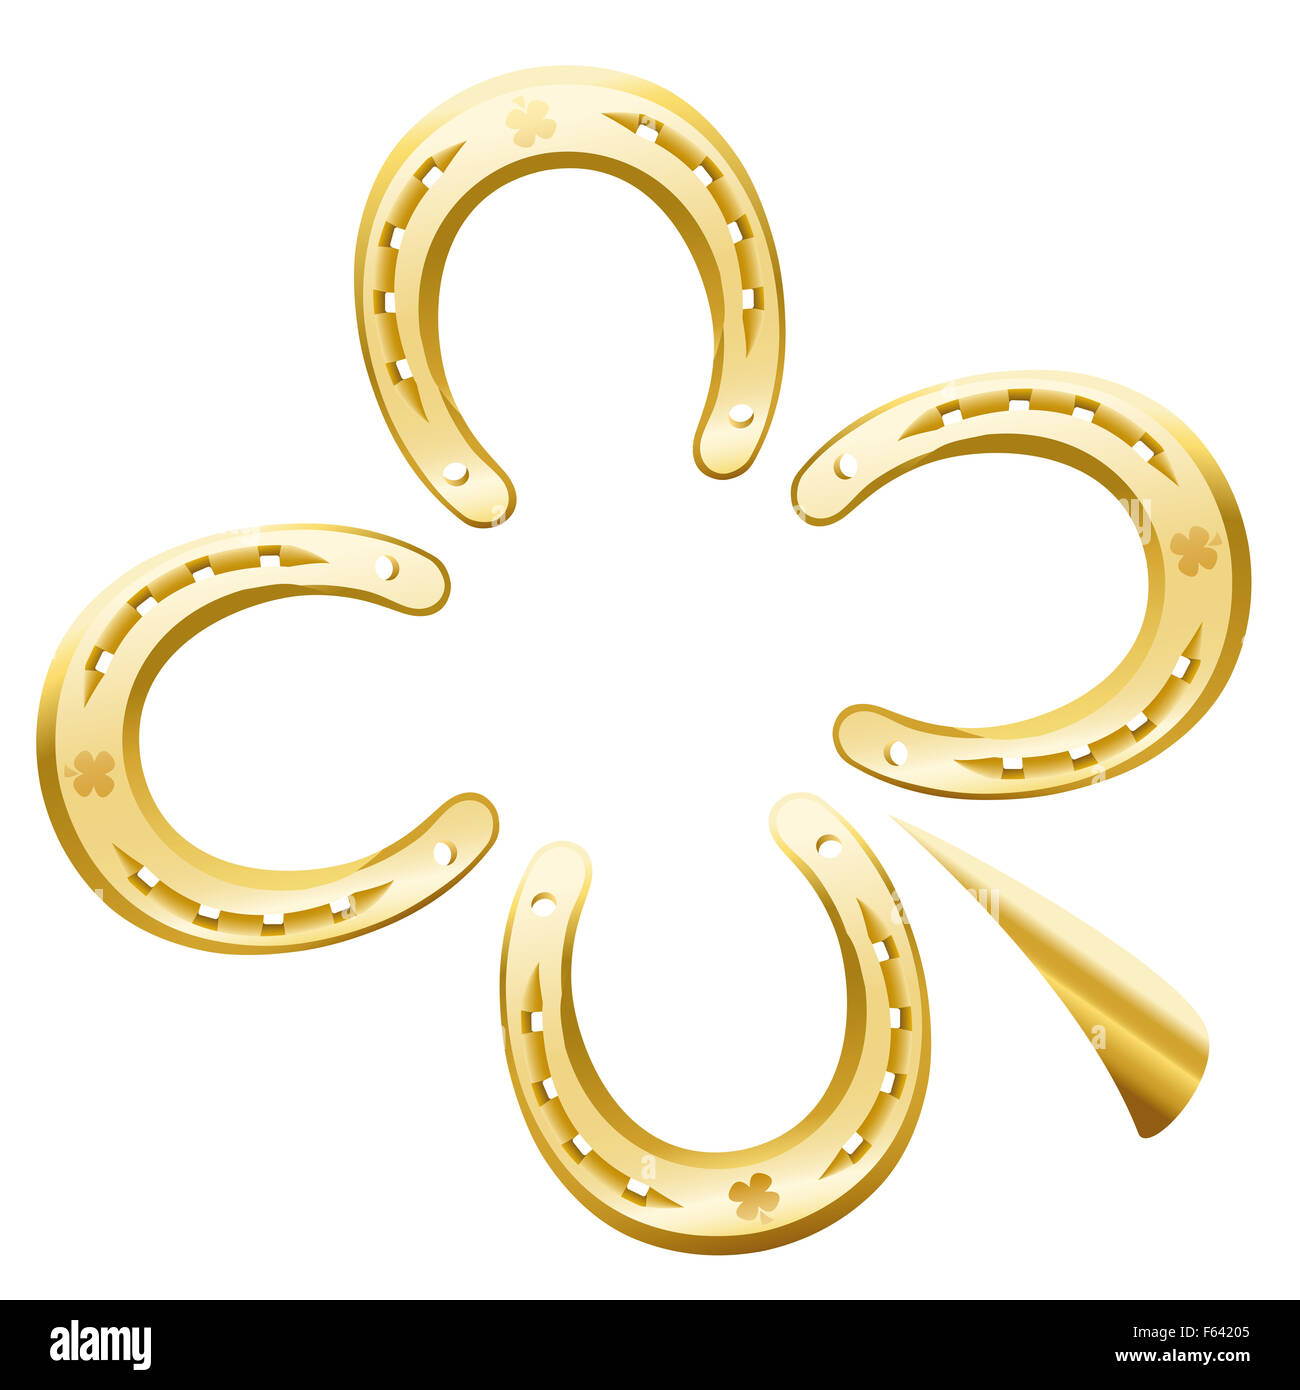 A foglia di trifoglio composto di quattro ferri di cavallo dorata come un simbolo di buona fortuna. Immagine su sfondo bianco. Foto Stock